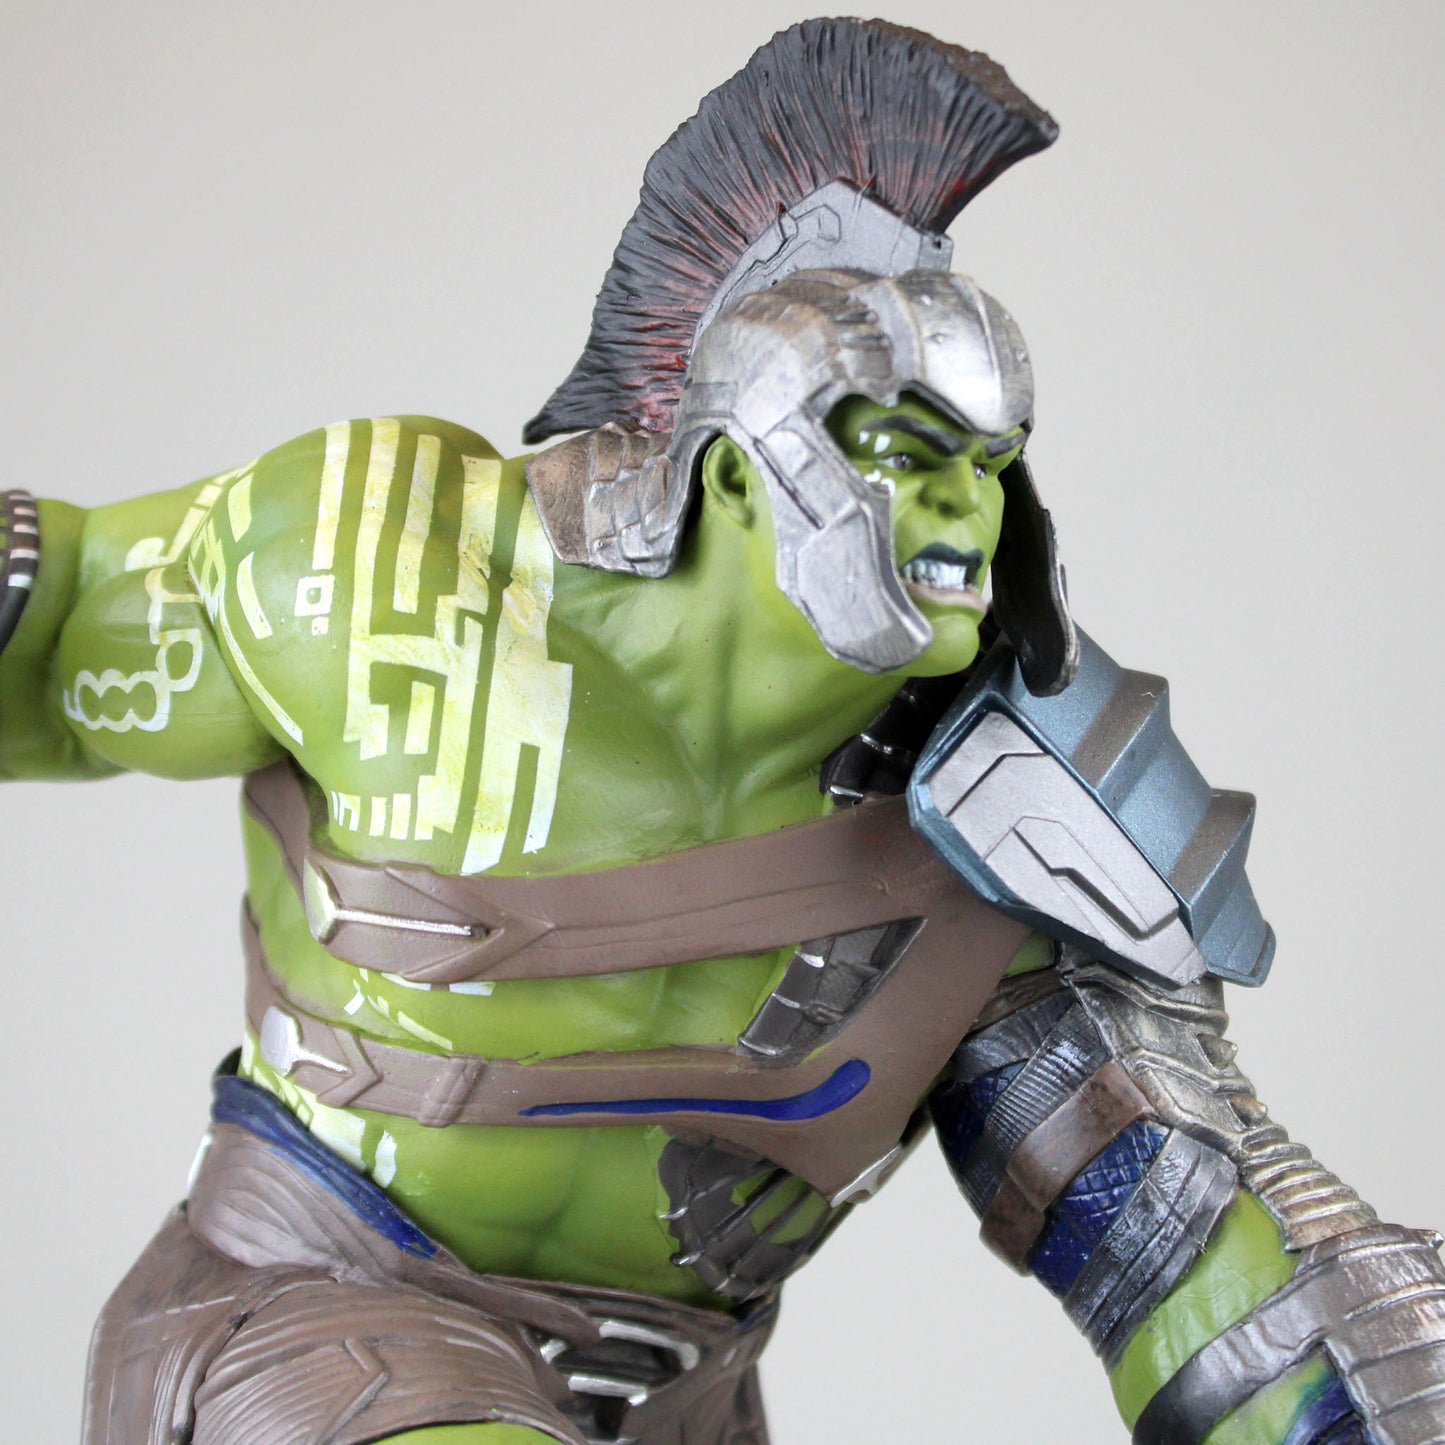 Diamond Marvel Gallery Figurine - Avengers Endgame - Tracksuit Hulk